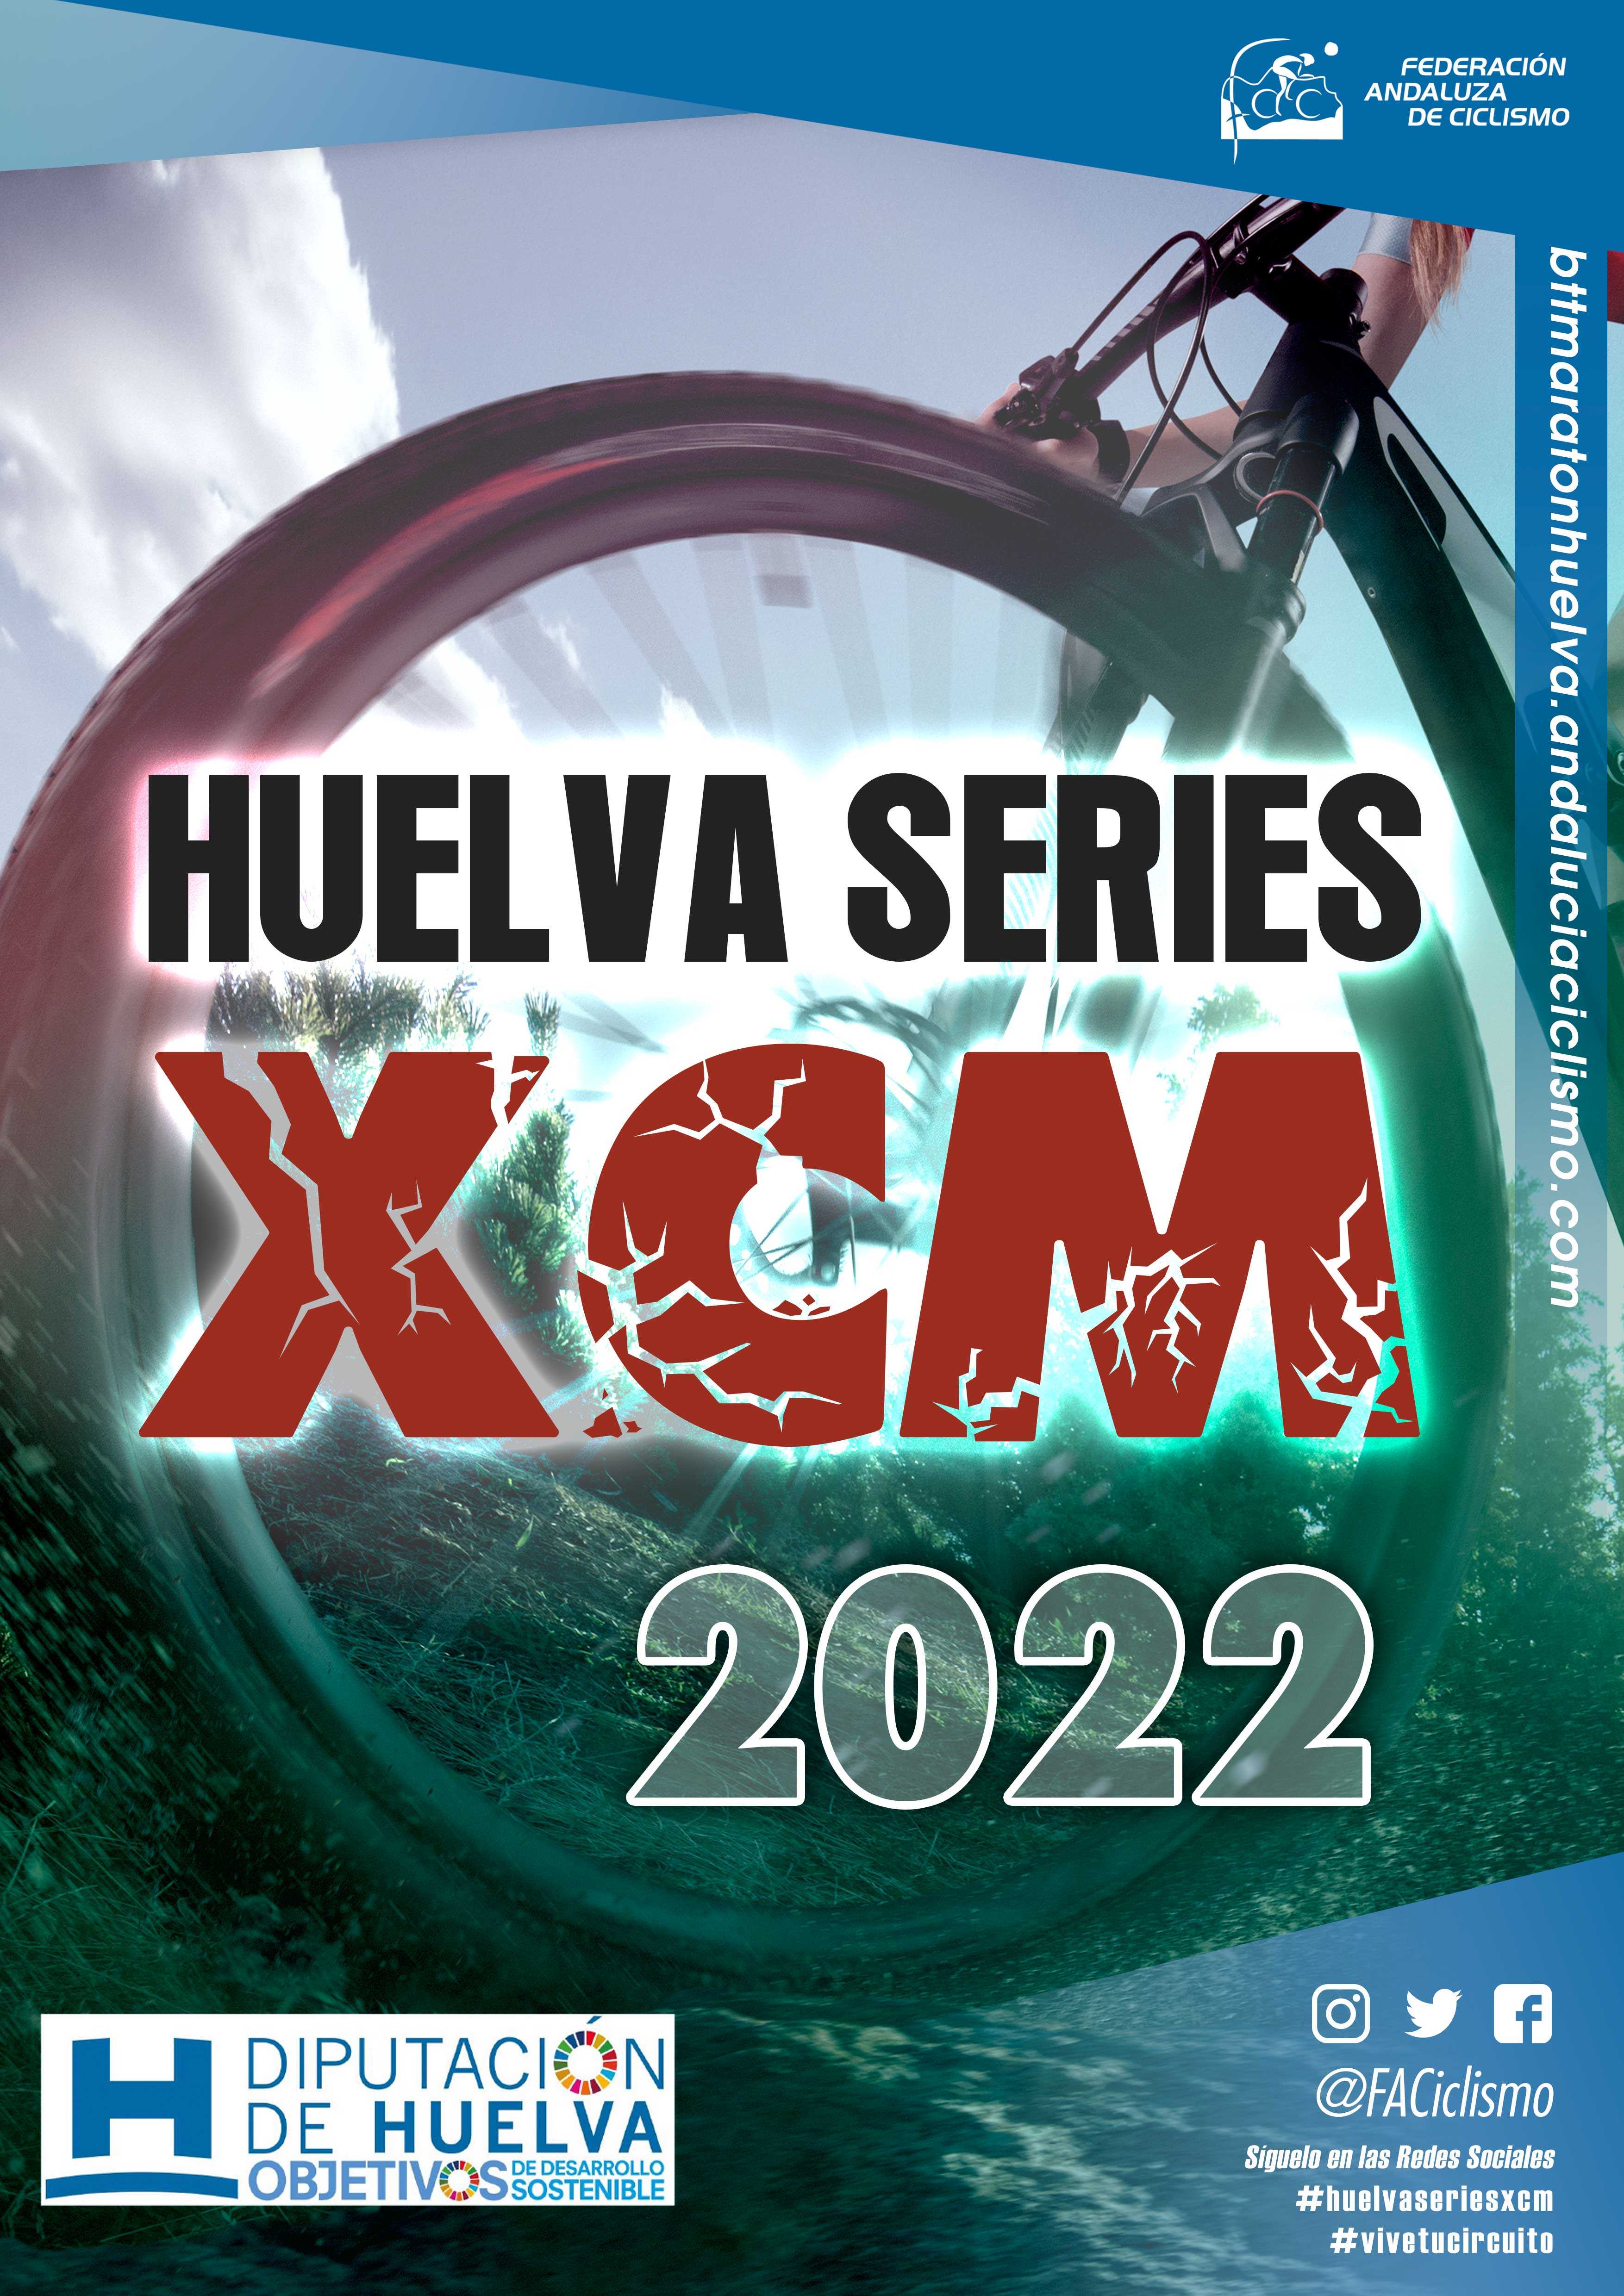 Las XCM Series Huelva 2022 se dirigen hacia Calañas